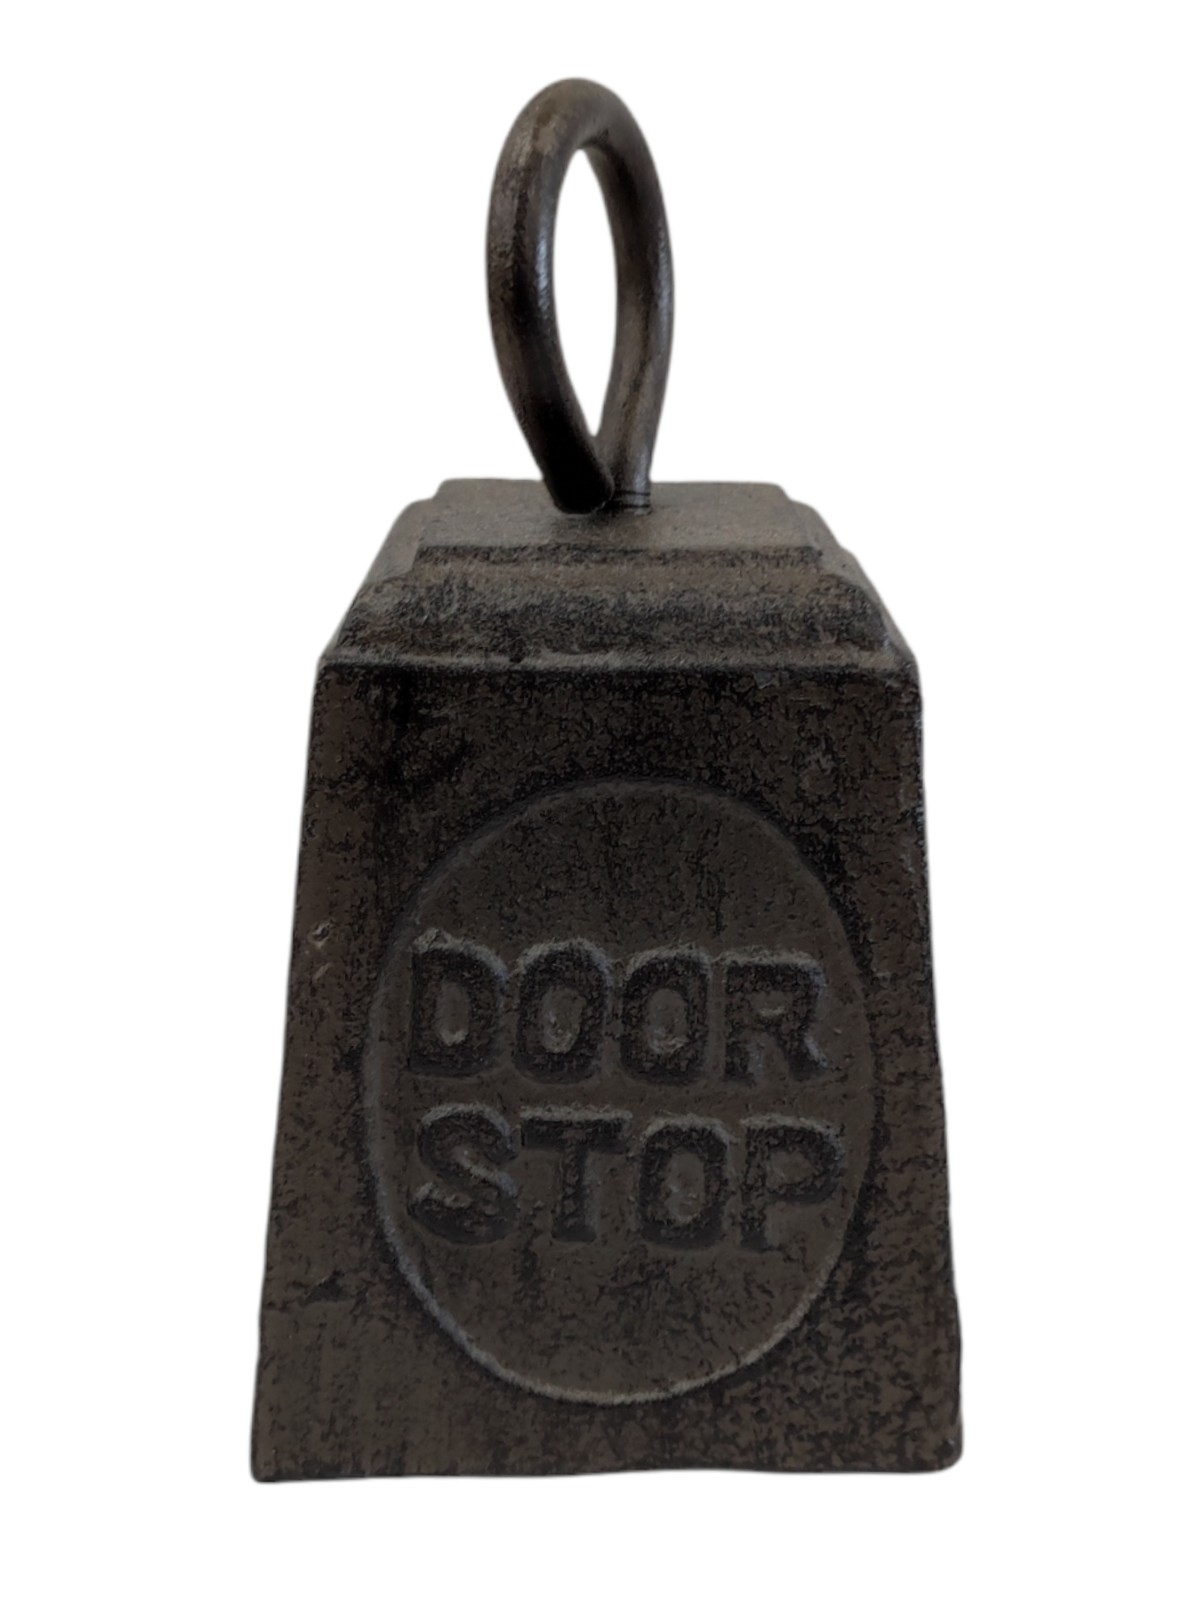 Cast iron door stop